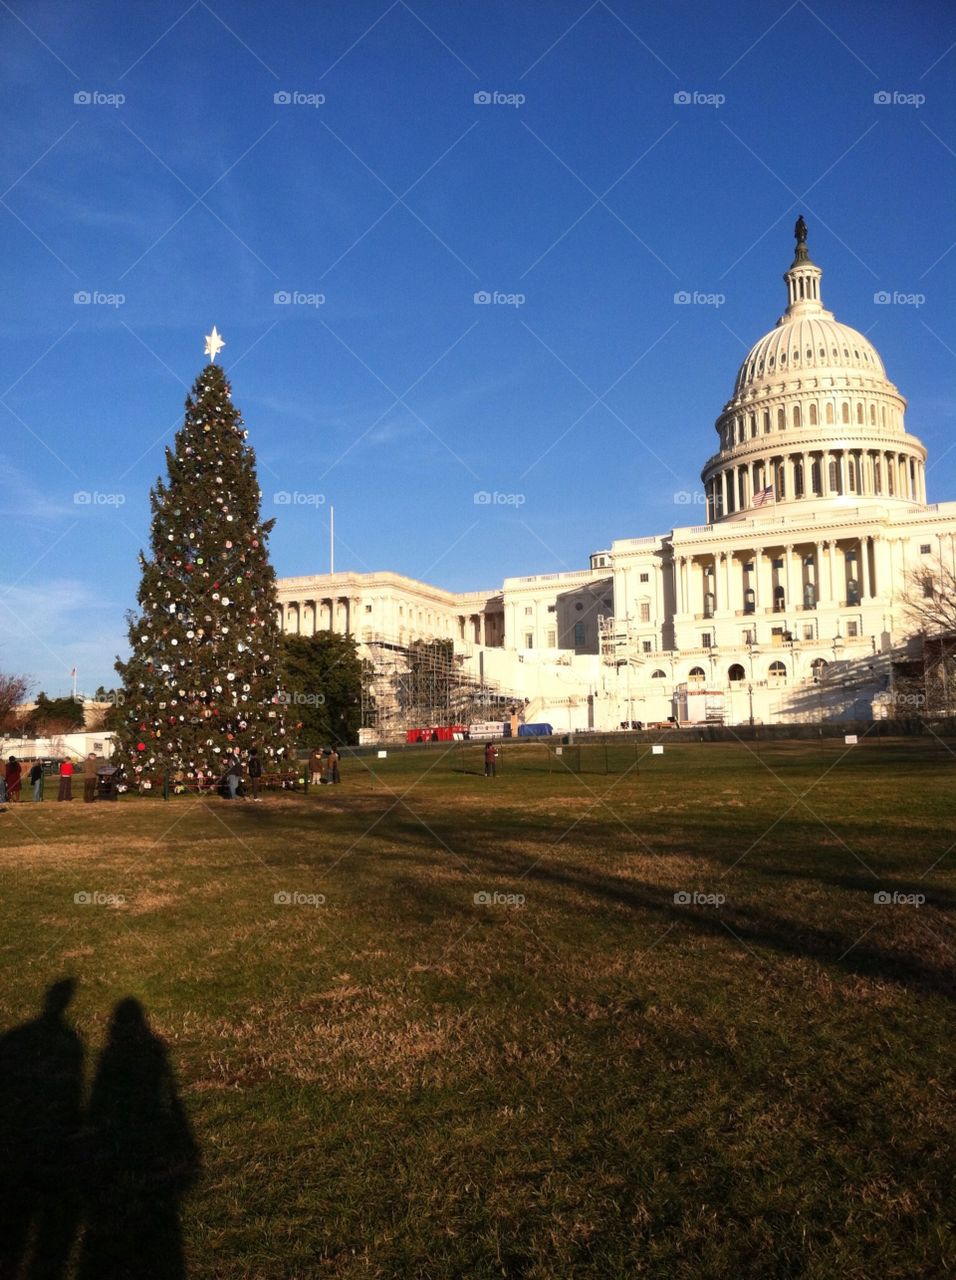 Washington, D.C. Christmas time